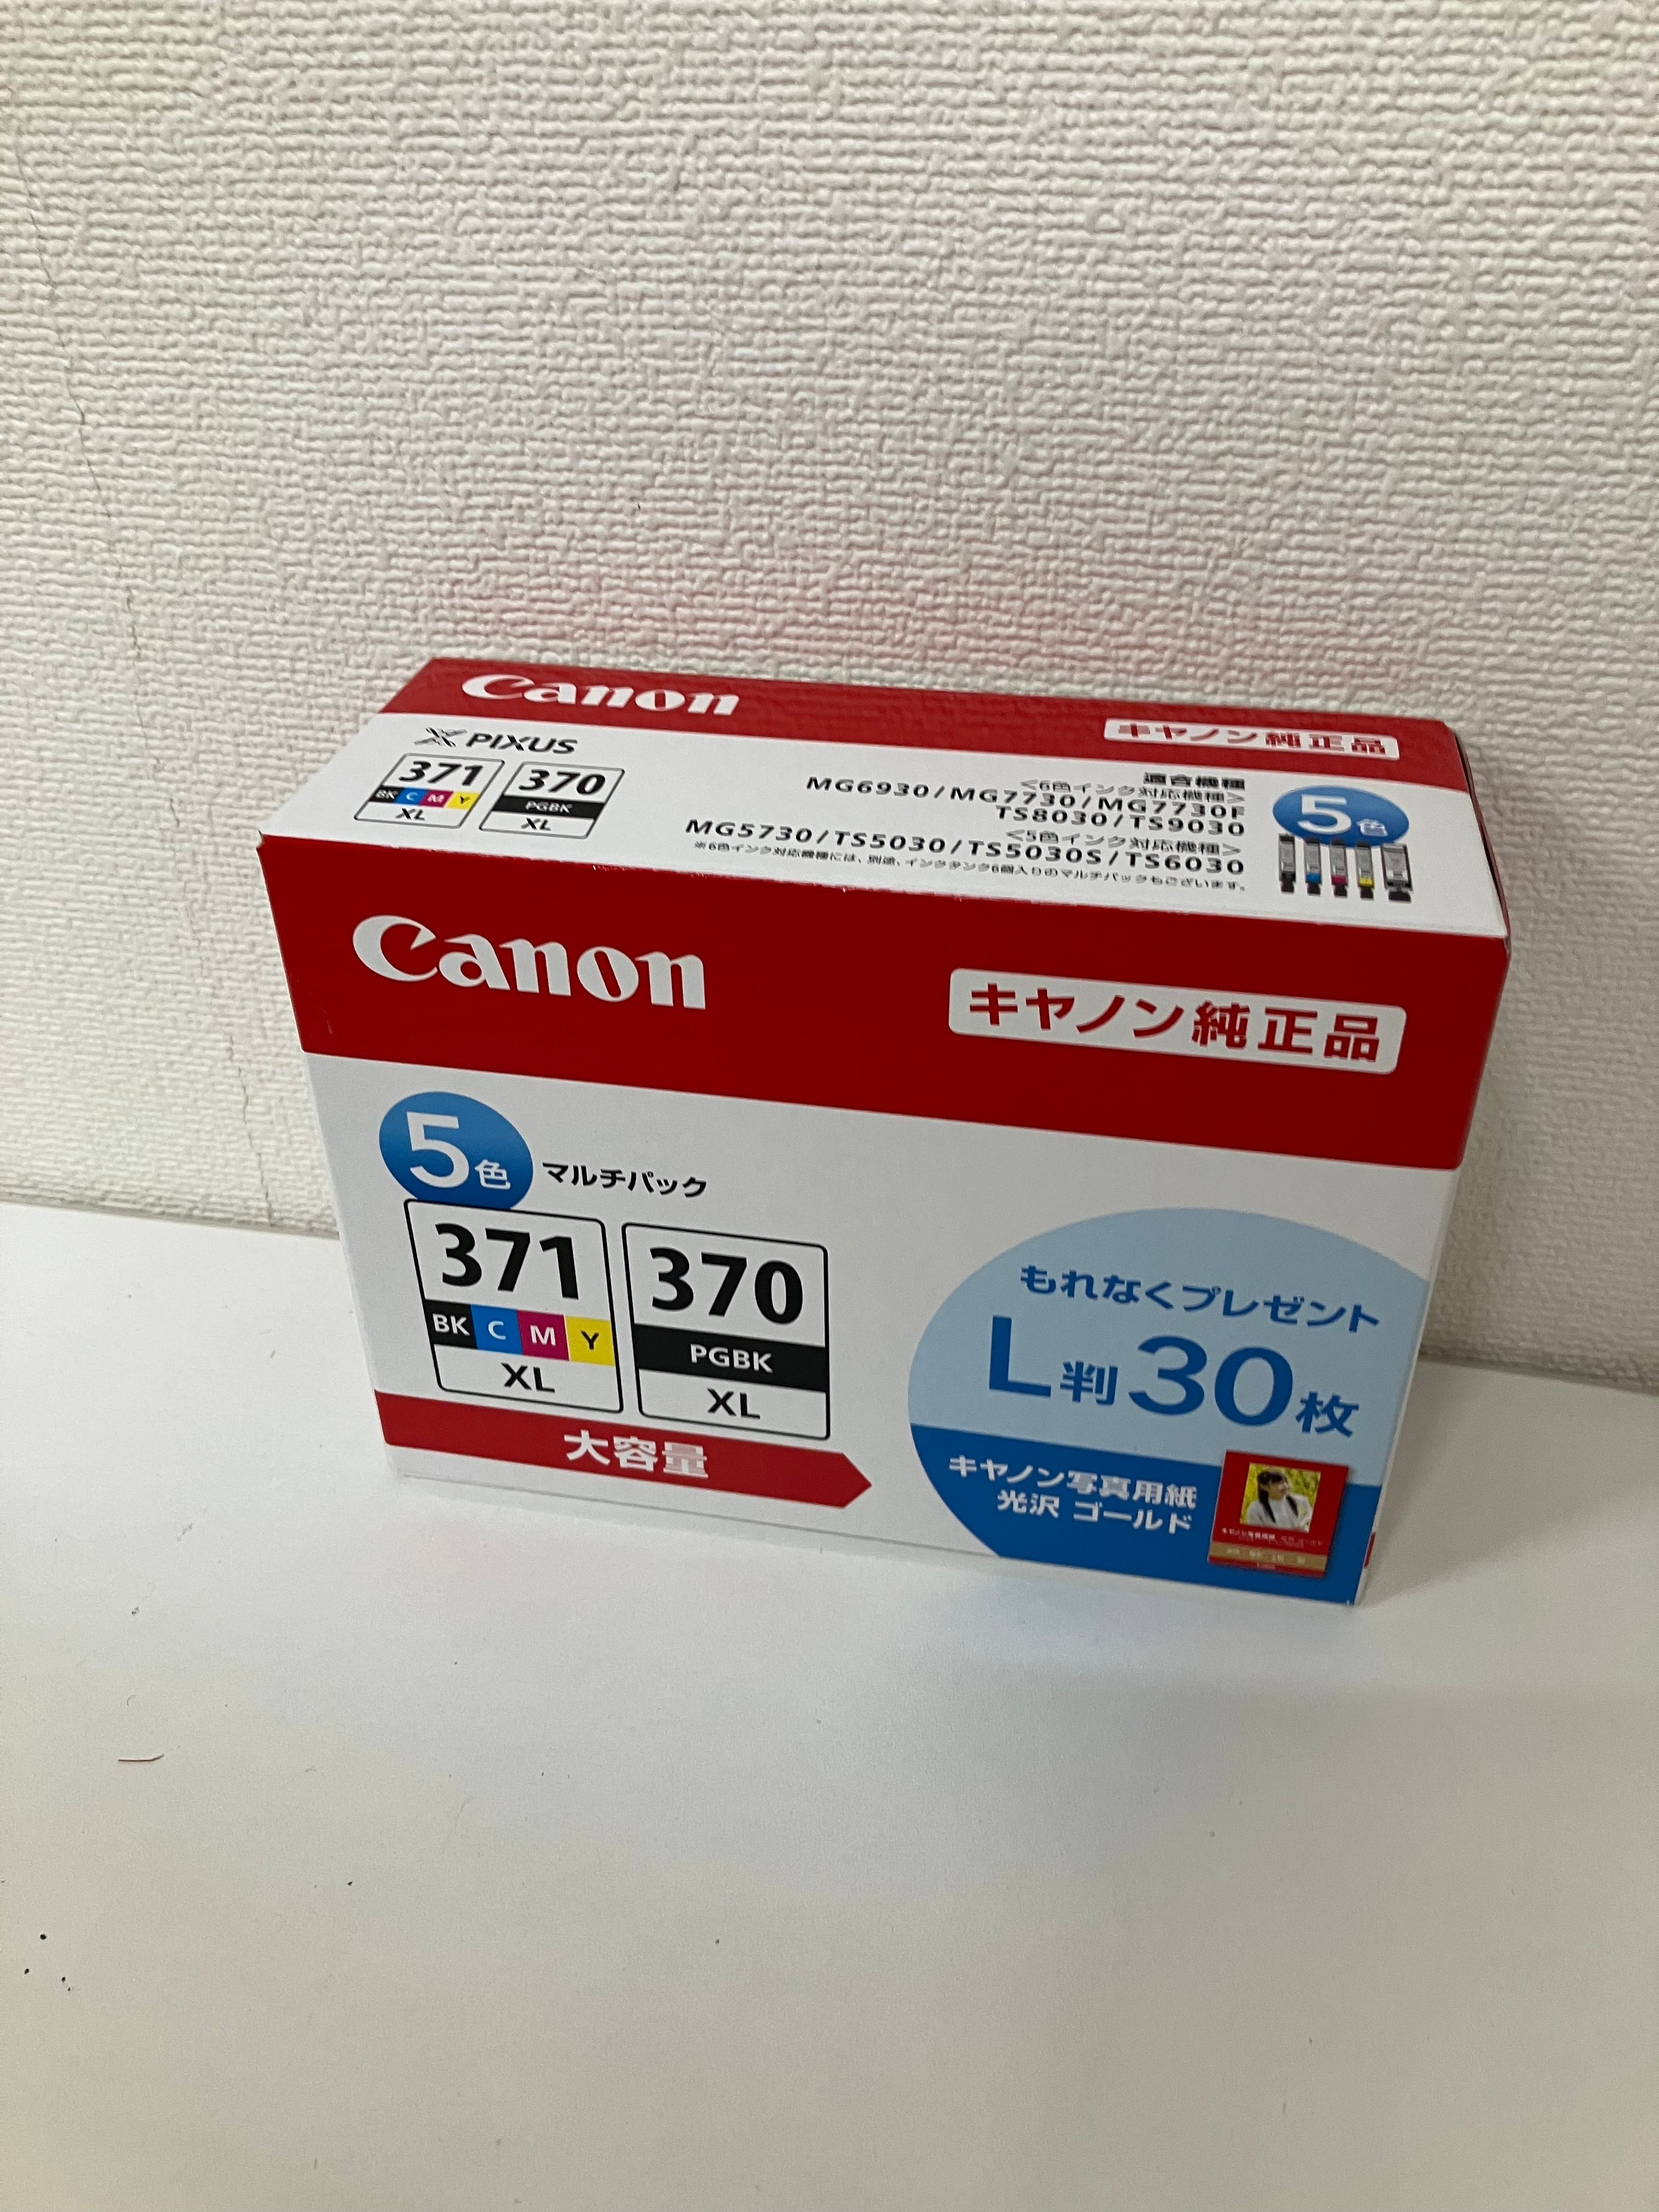 [取り付け期限切れ]Canon BCI-371XL+370XL/5MP